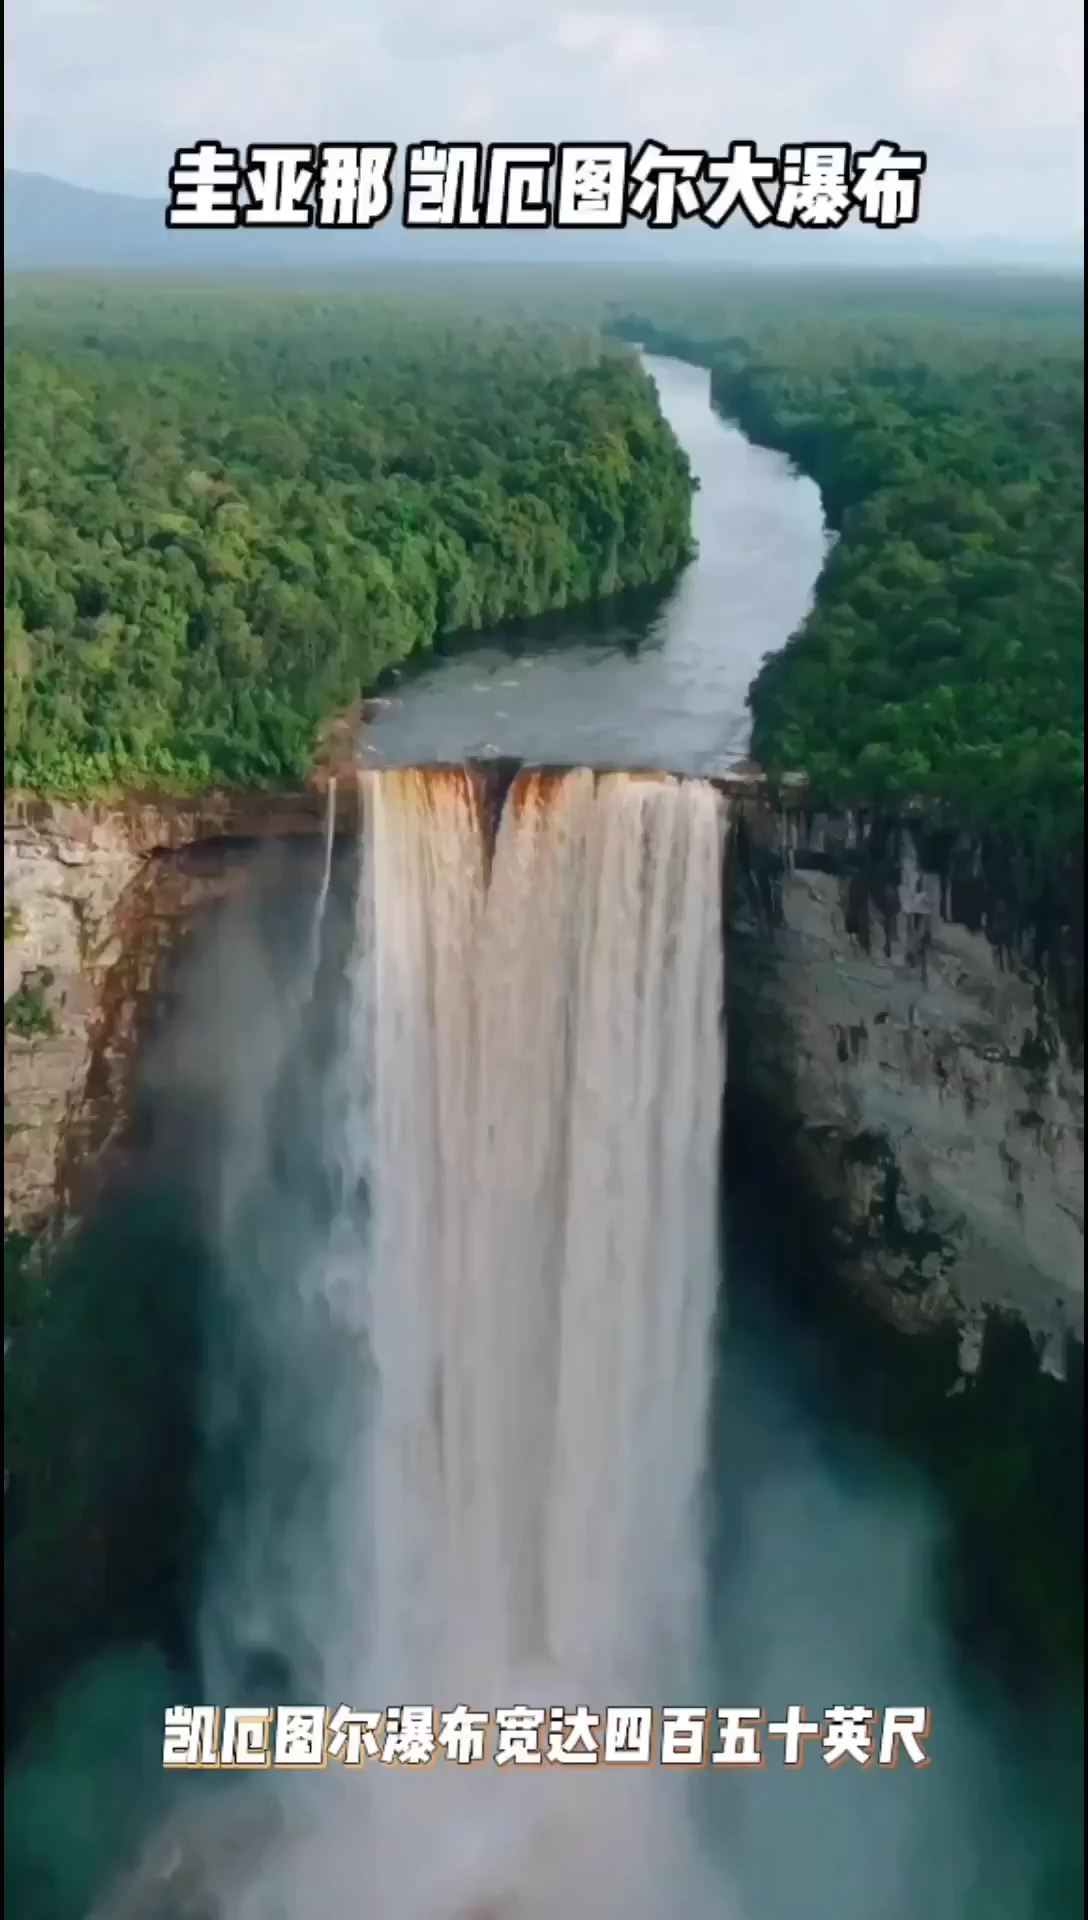 世界最大瀑布之一圭亚那 凯厄图尔大瀑布